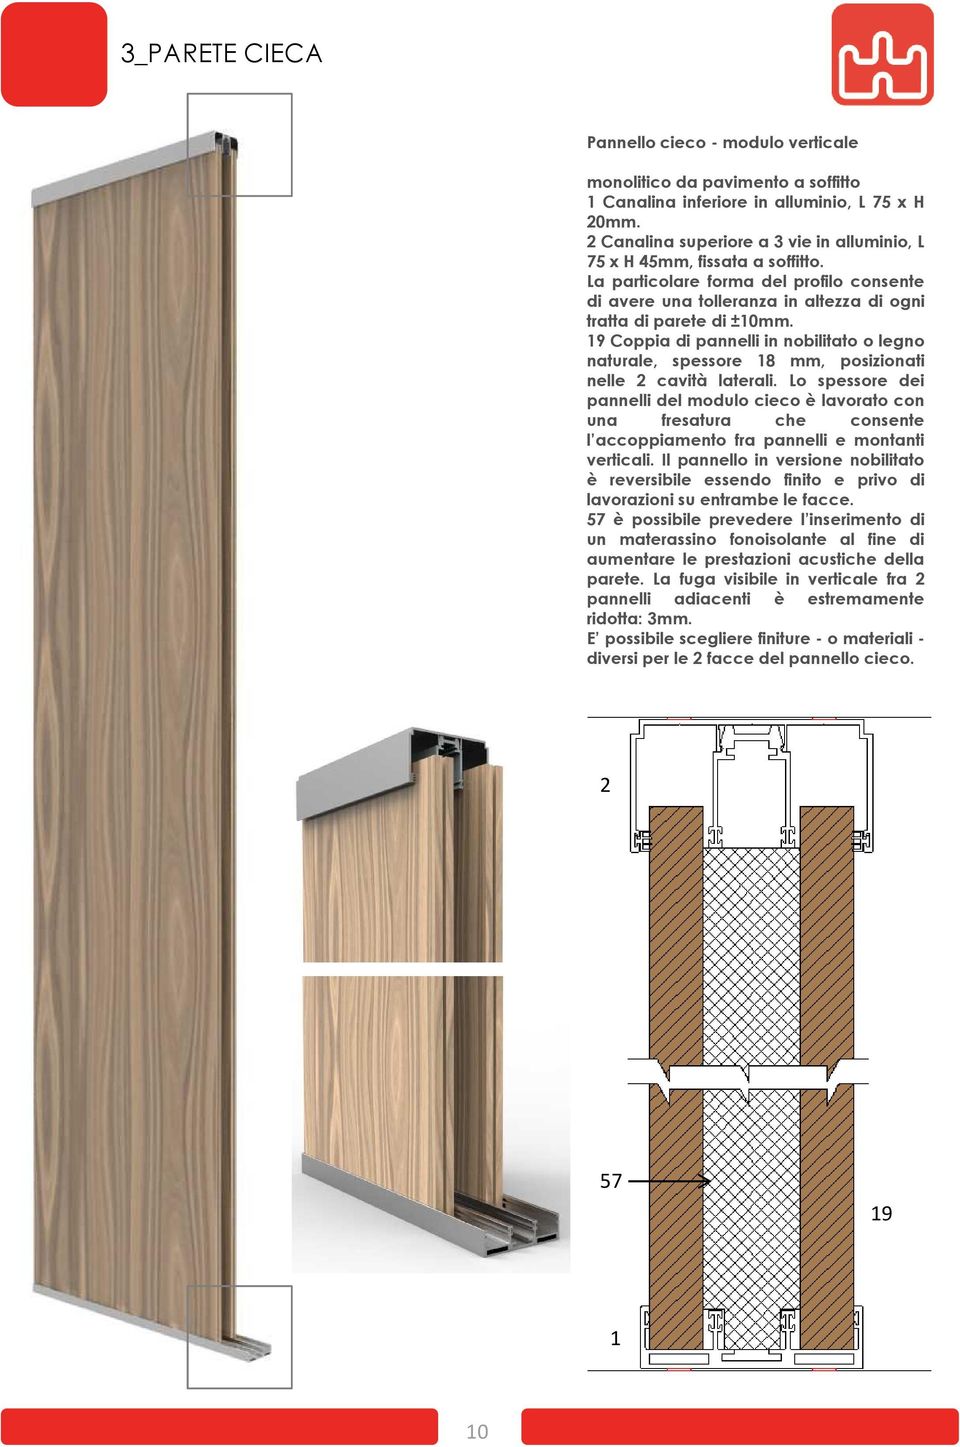 19 Coppia di pannelli in nobilitato o legno naturale, spessore 18 mm, posizionati nelle 2 cavità laterali.